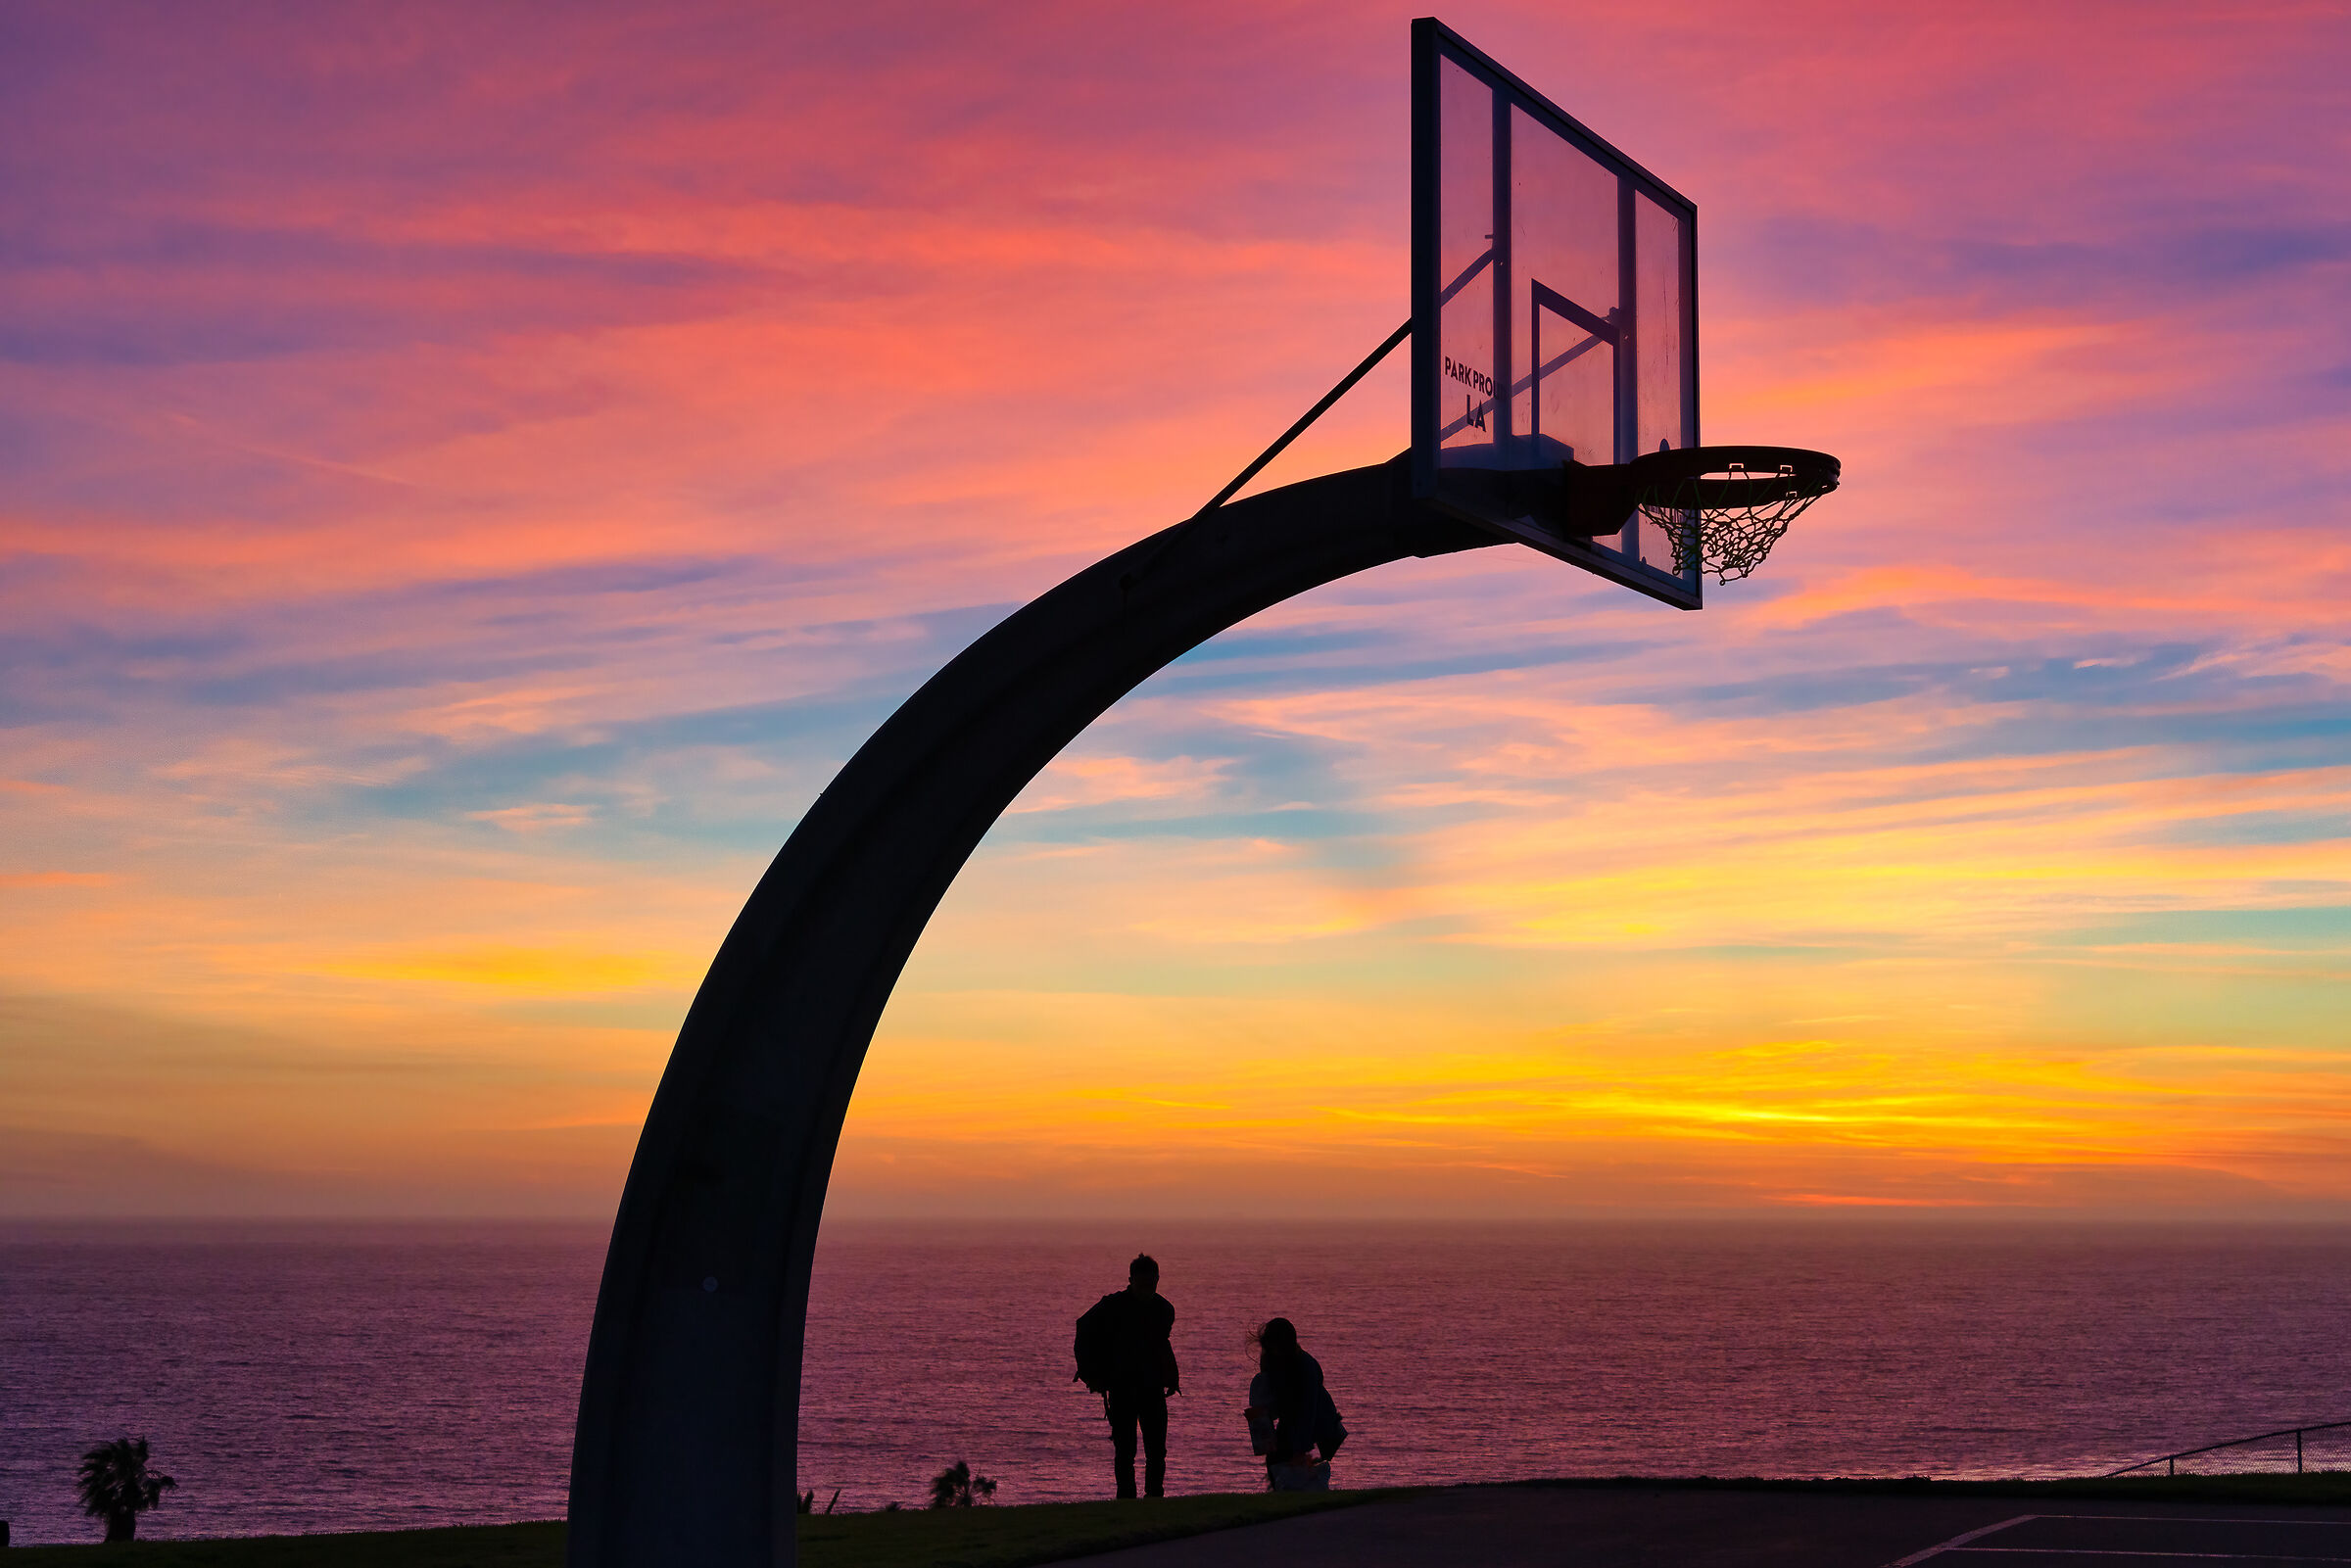 Basketball heaven...